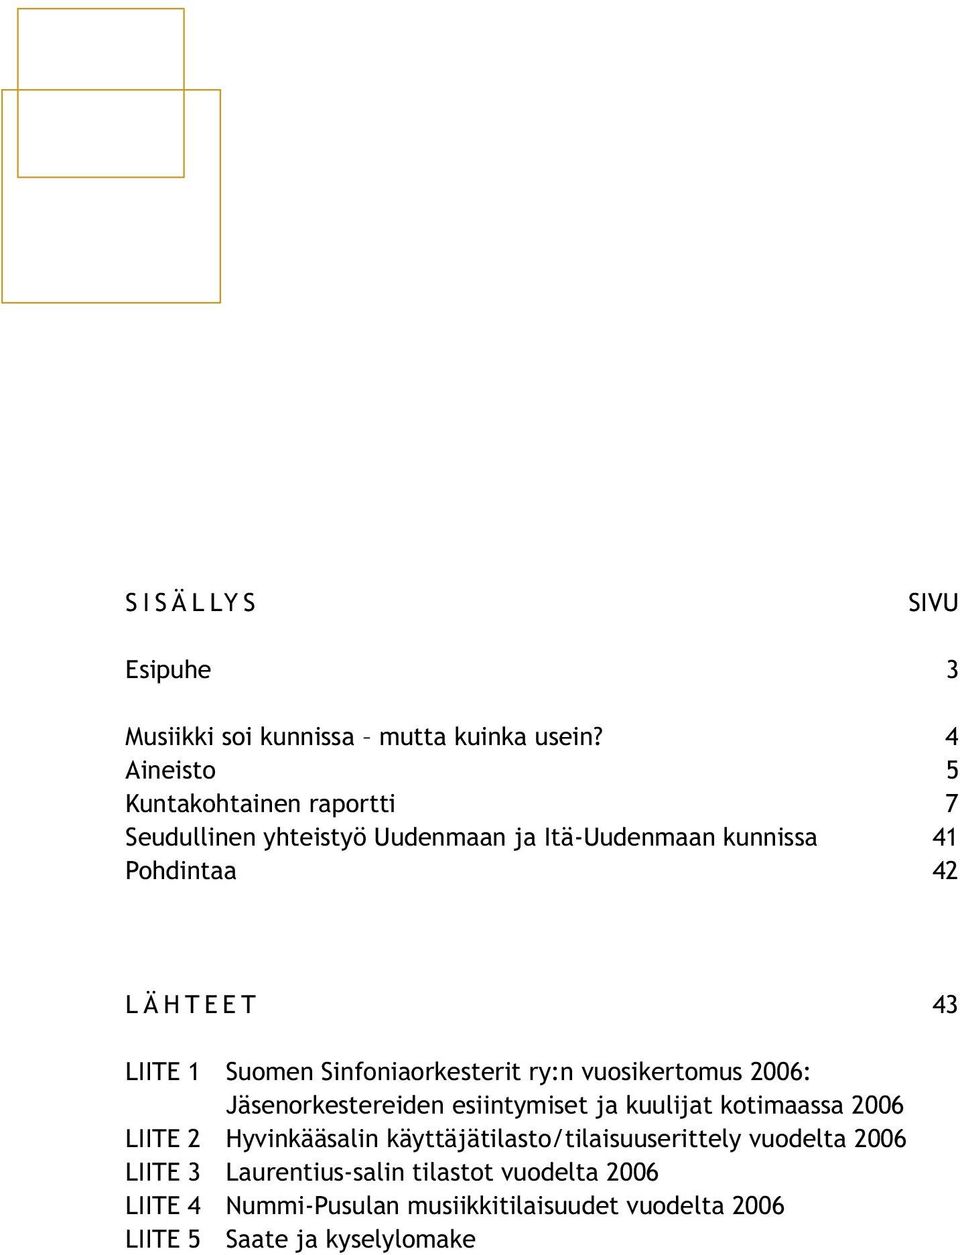 LIITE 1 Suomen Sinfoniaorkesterit ry:n vuosikertomus 2006: Jäsenorkestereiden esiintymiset ja kuulijat kotimaassa 2006 LIITE 2